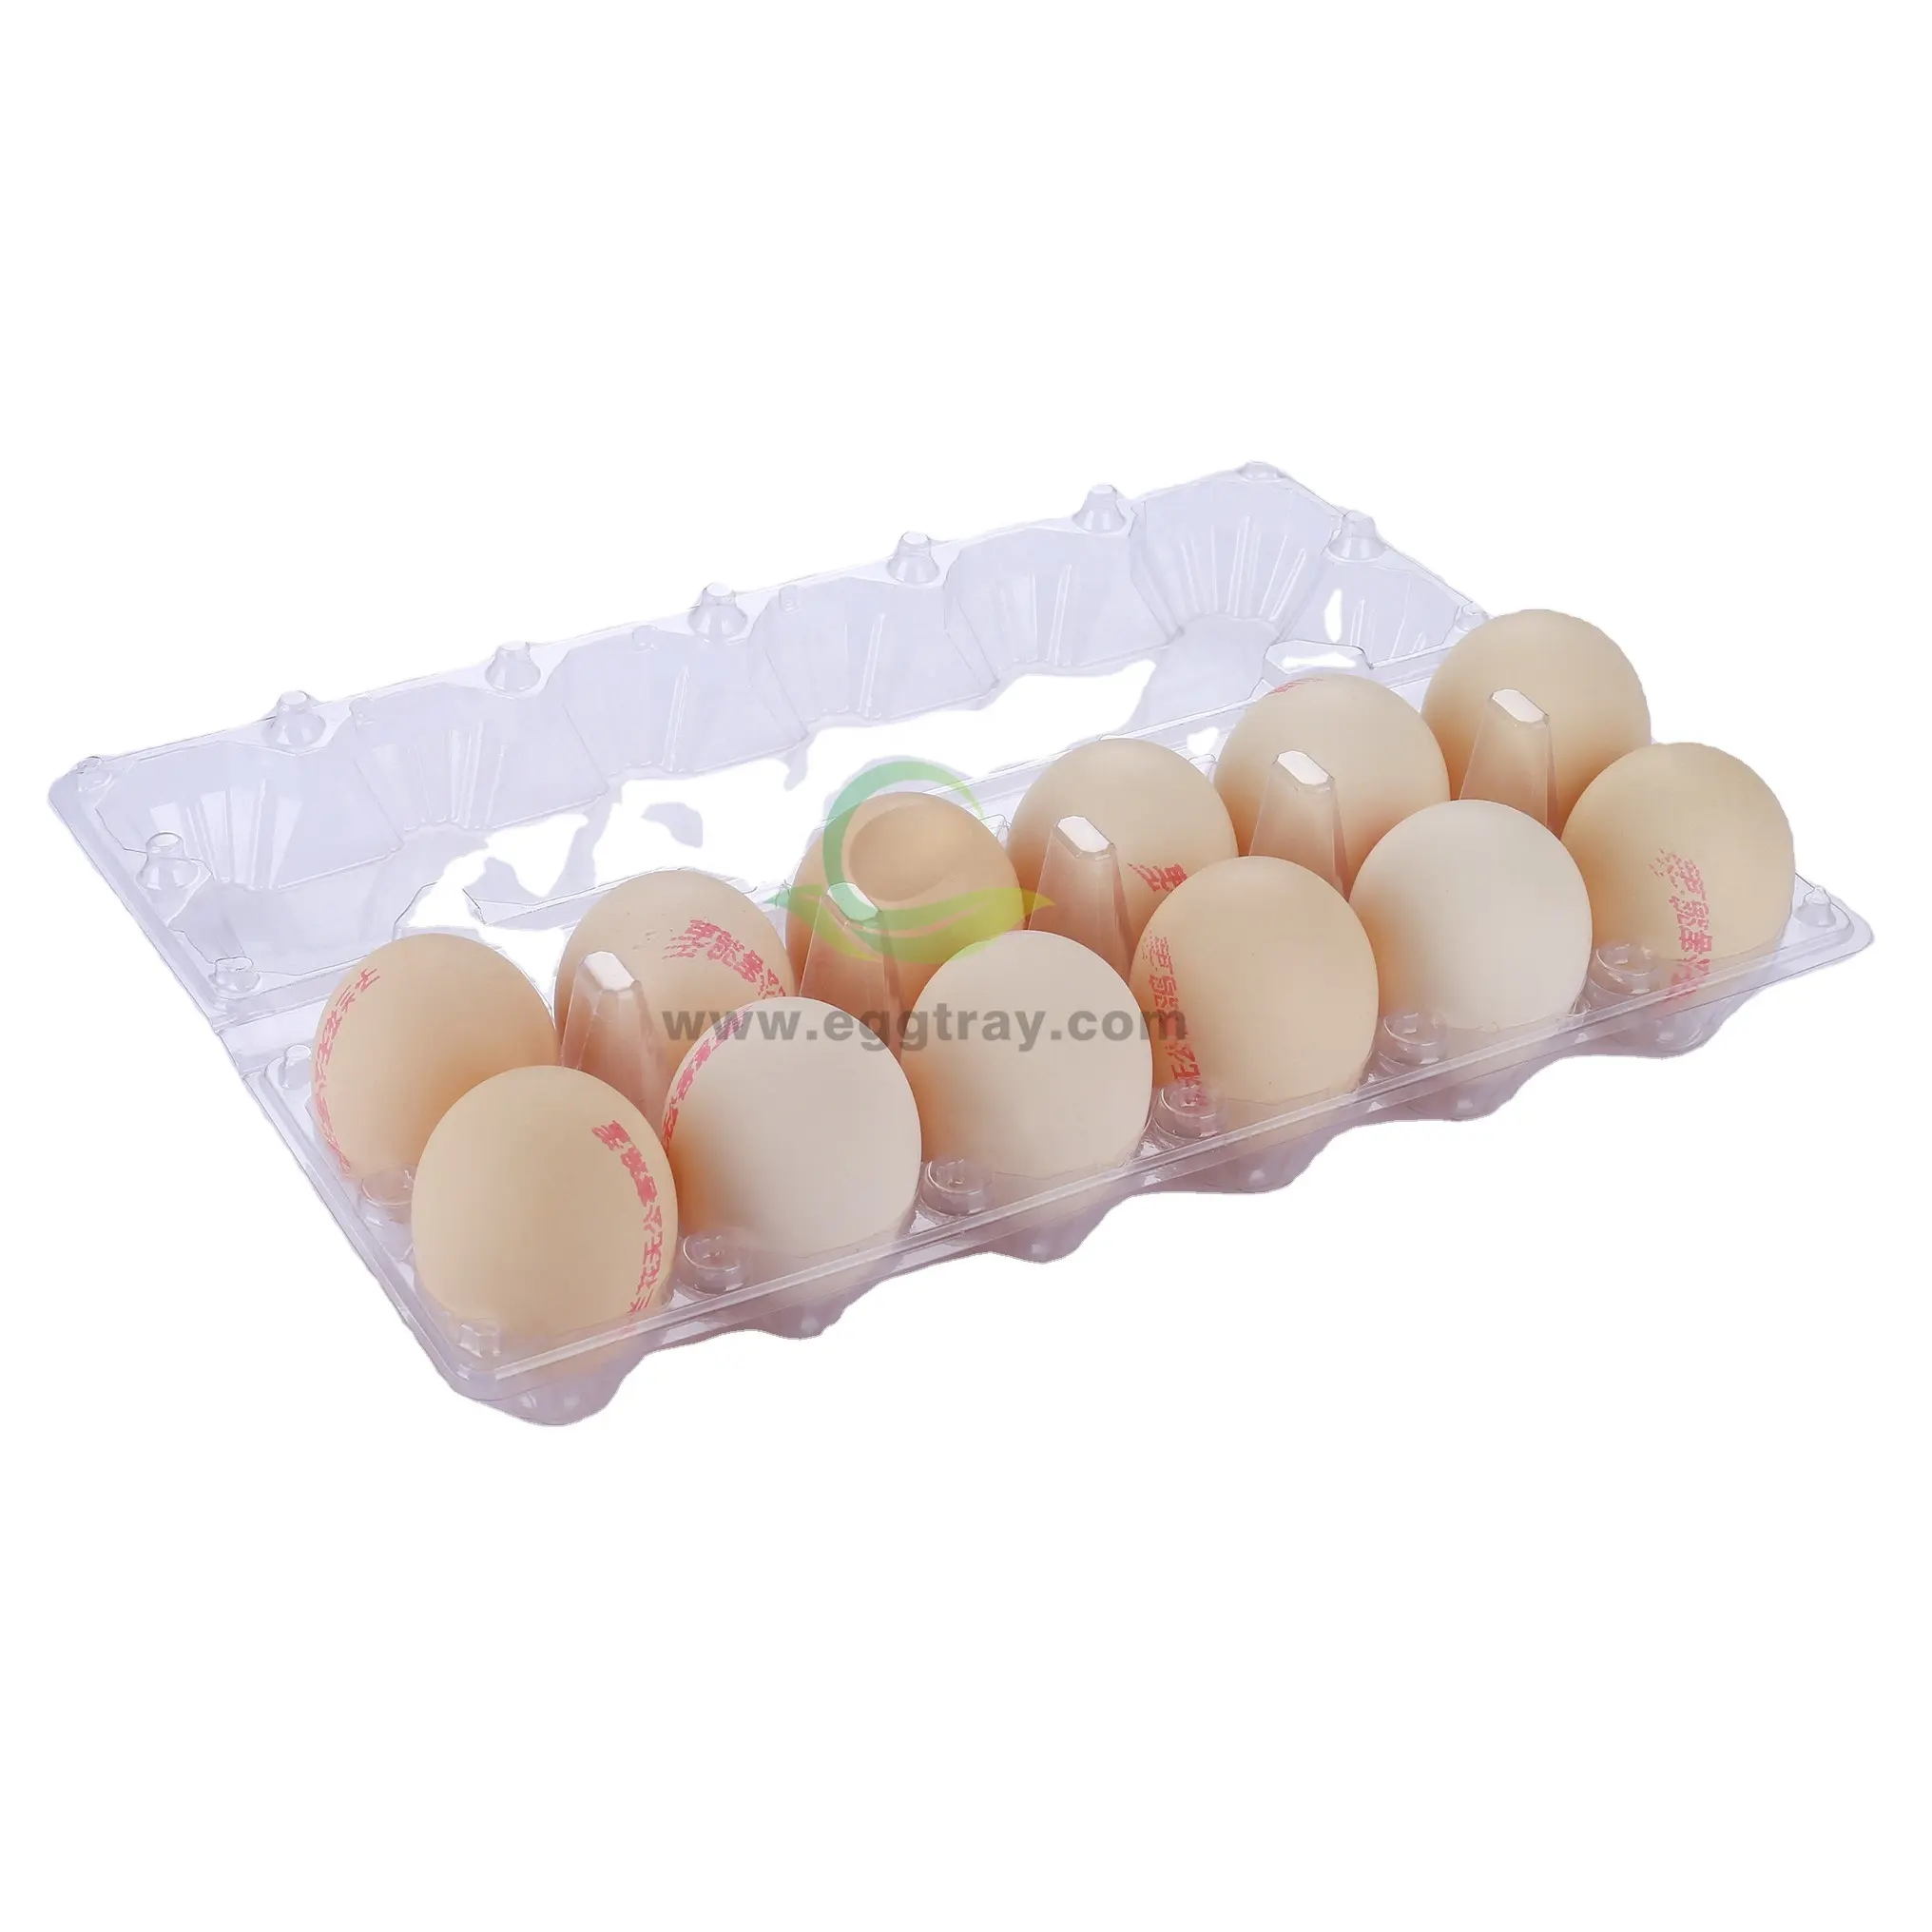 Plateau à œufs en plastique transparent jetable 12 trous pour 12 œufs en PET